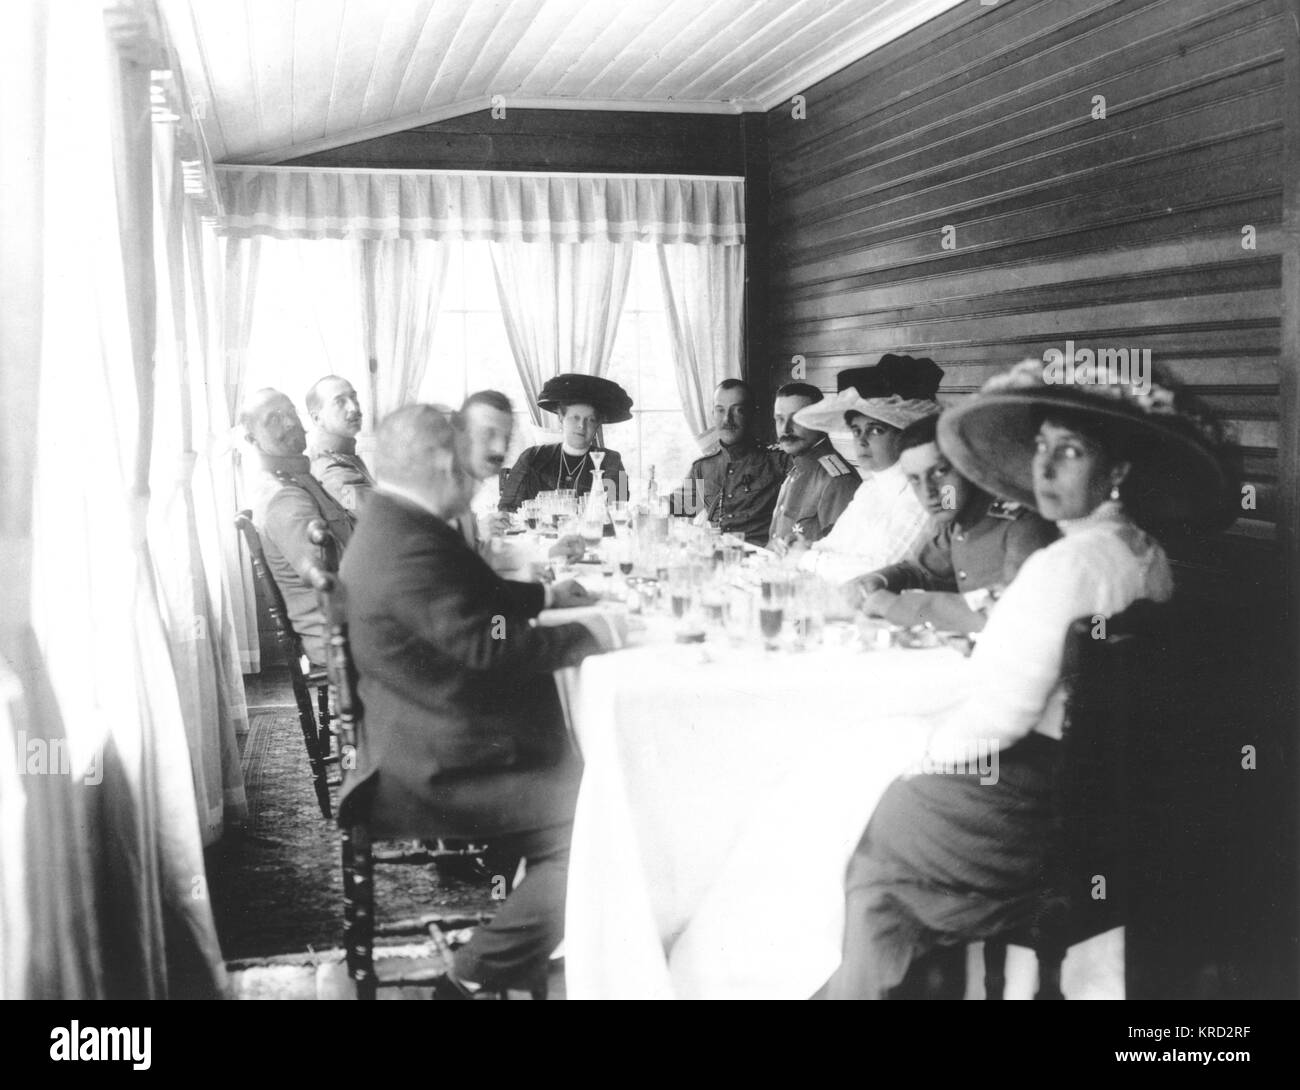 De riches russes dix bénéficiant d'une place de pain en 1913. Date : 1913 Banque D'Images